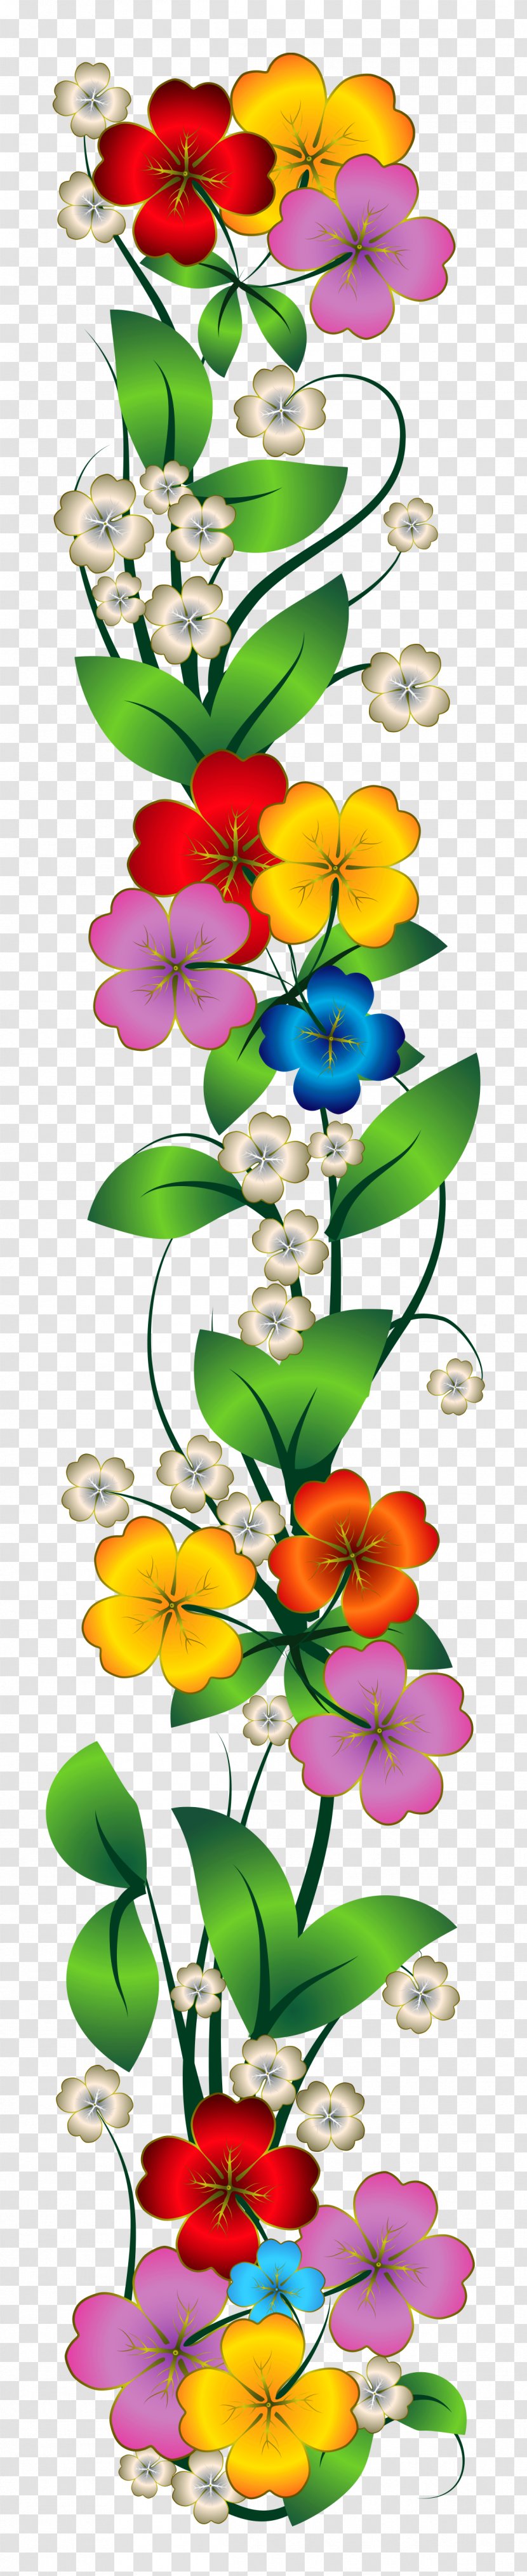 Flower Bouquet Clip Art - Floral Design - Dussehra Transparent PNG